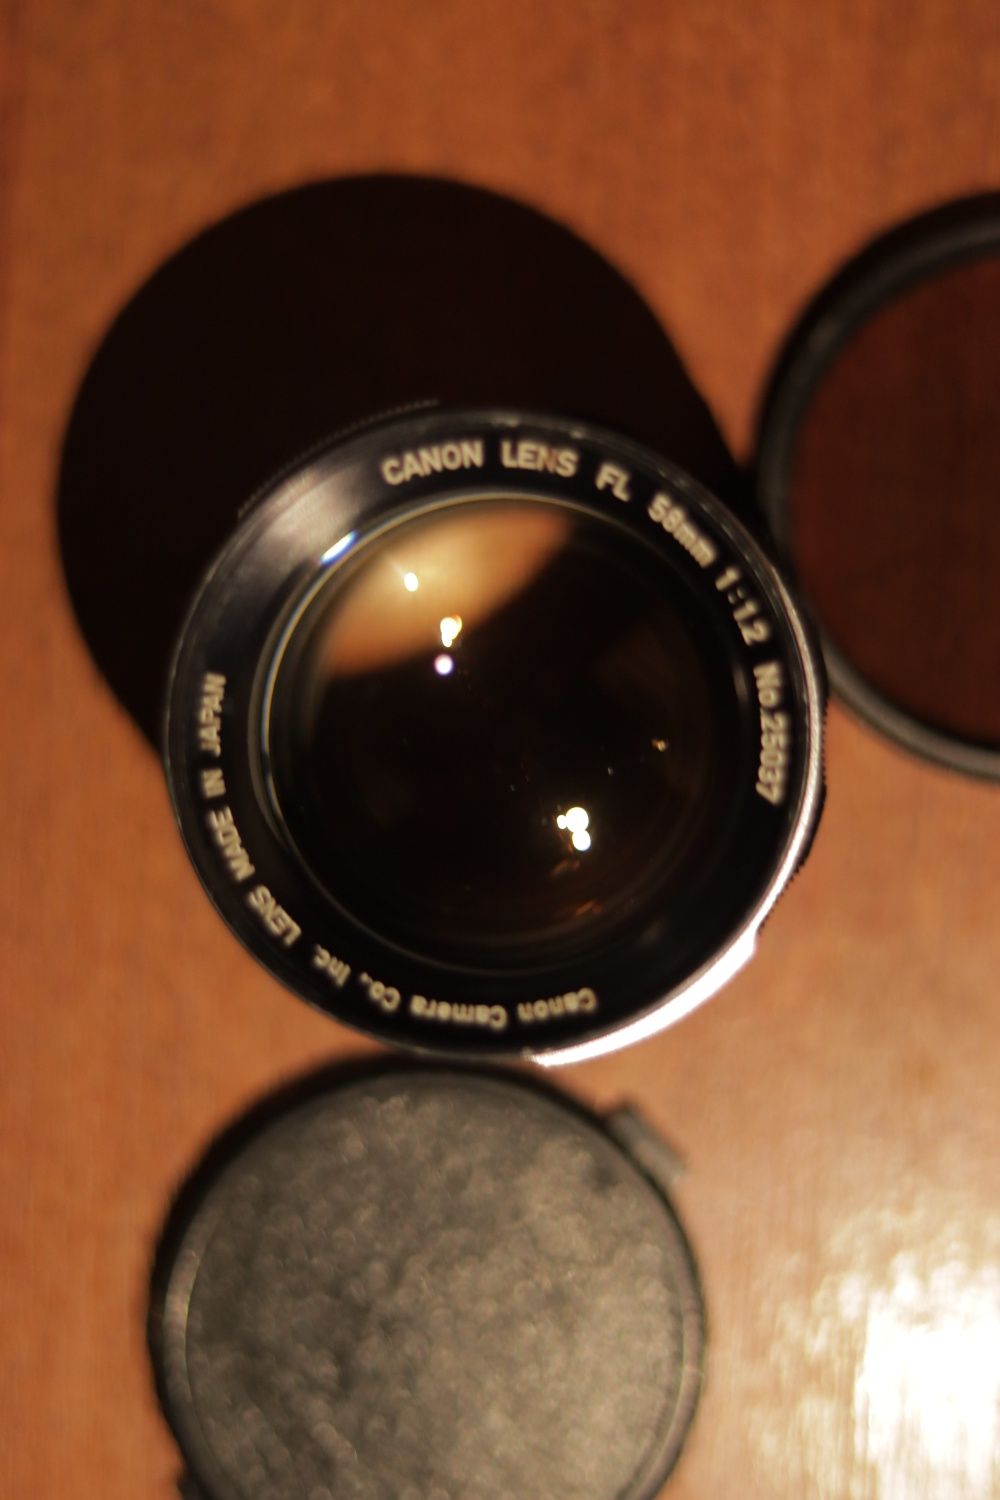 Canon FL 58mm 1:1.2 f1.2 Об'ектив Кенон Під кроп Камеру